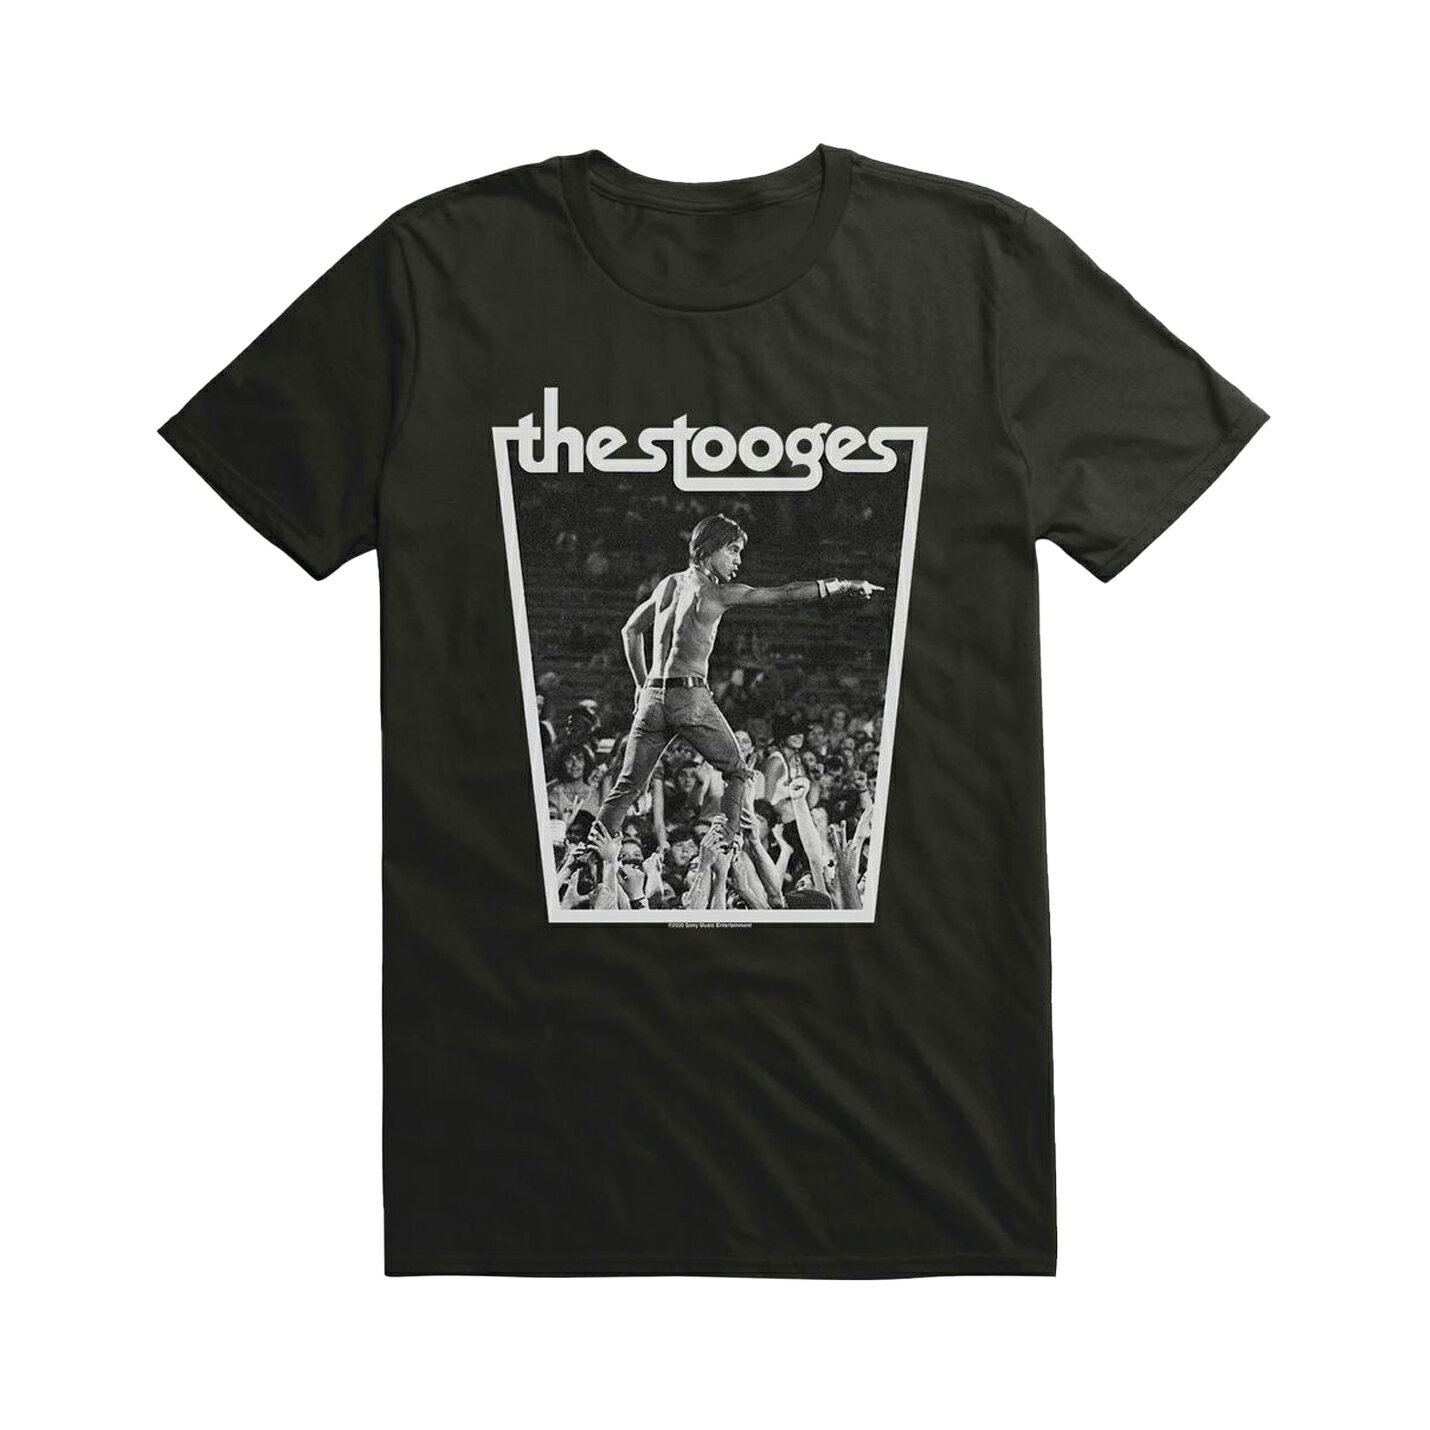 (イギー アンド ザ ストゥージズ) Iggy The Stooges オフィシャル商品 ユニセックス Crowd Walk Tシャツ 半袖 トップス 【海外通販】